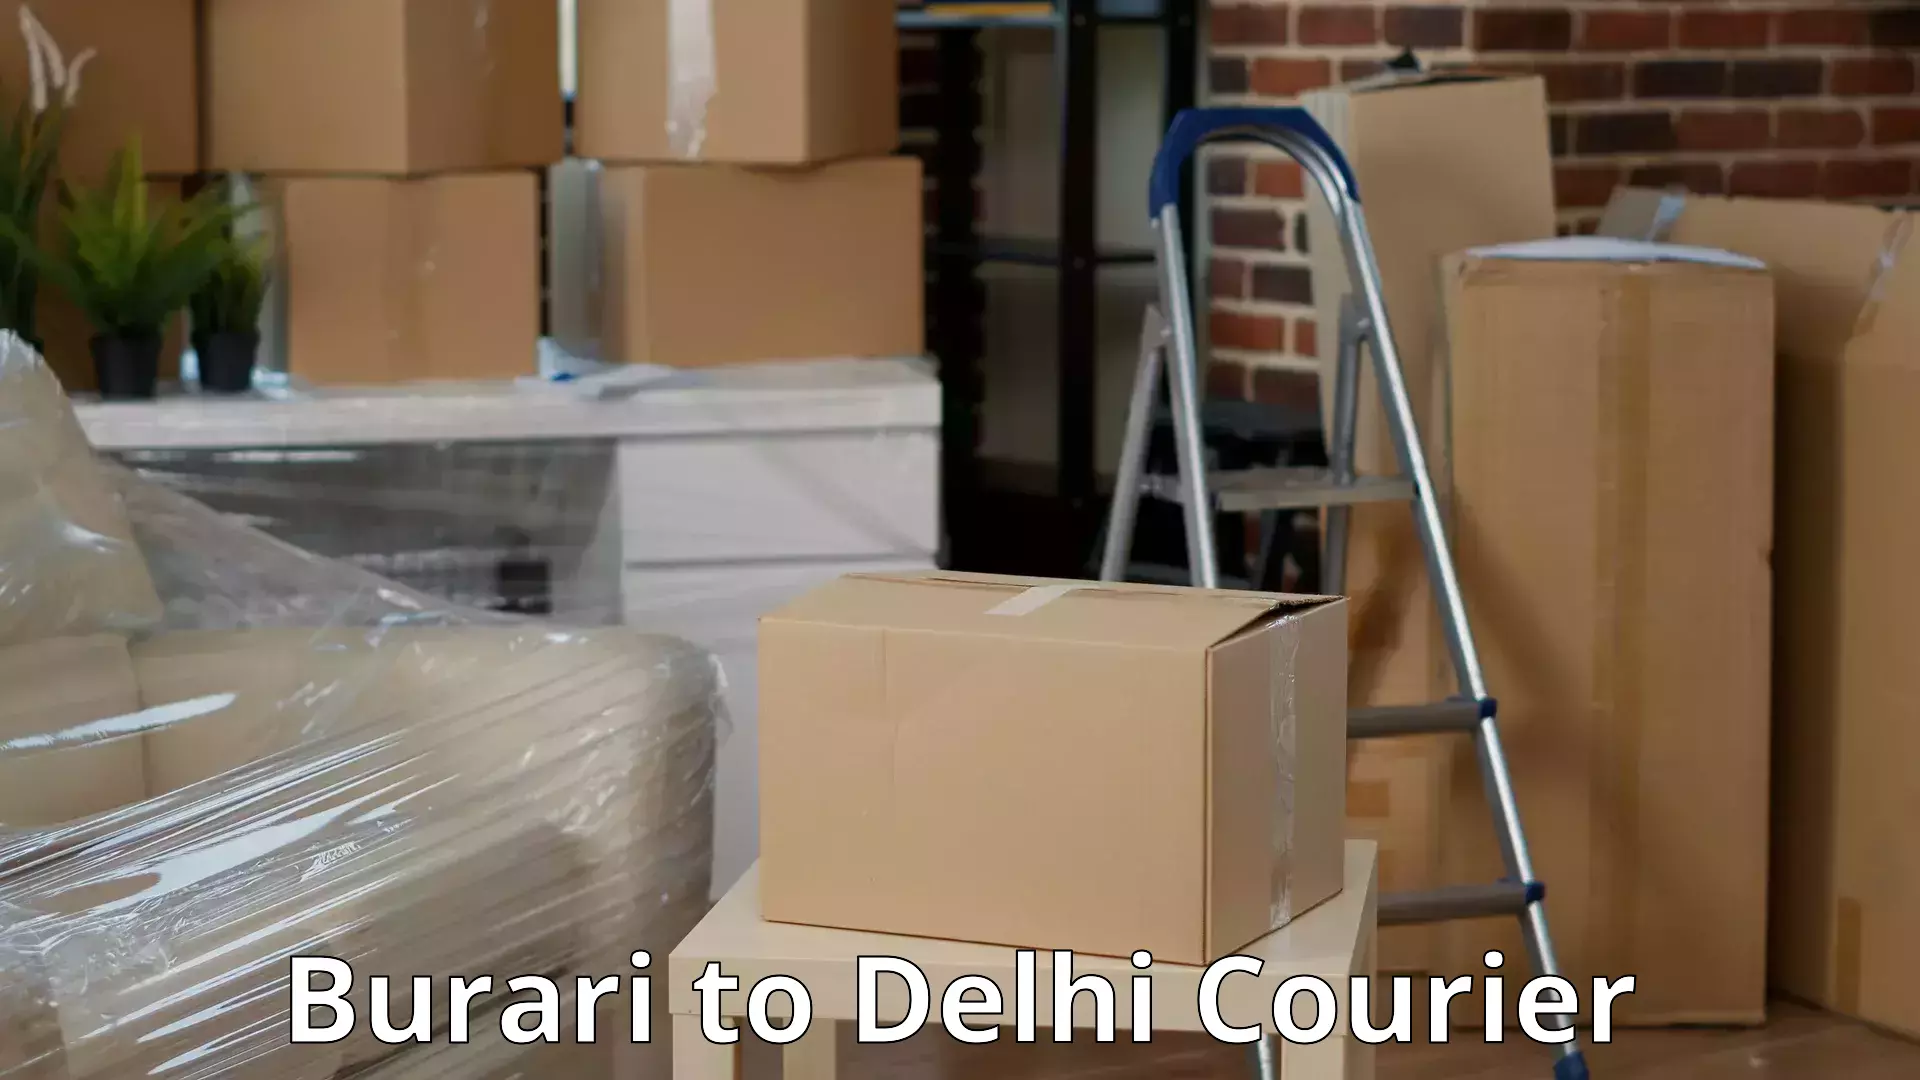 Professional packing services Burari to Jamia Millia Islamia New Delhi